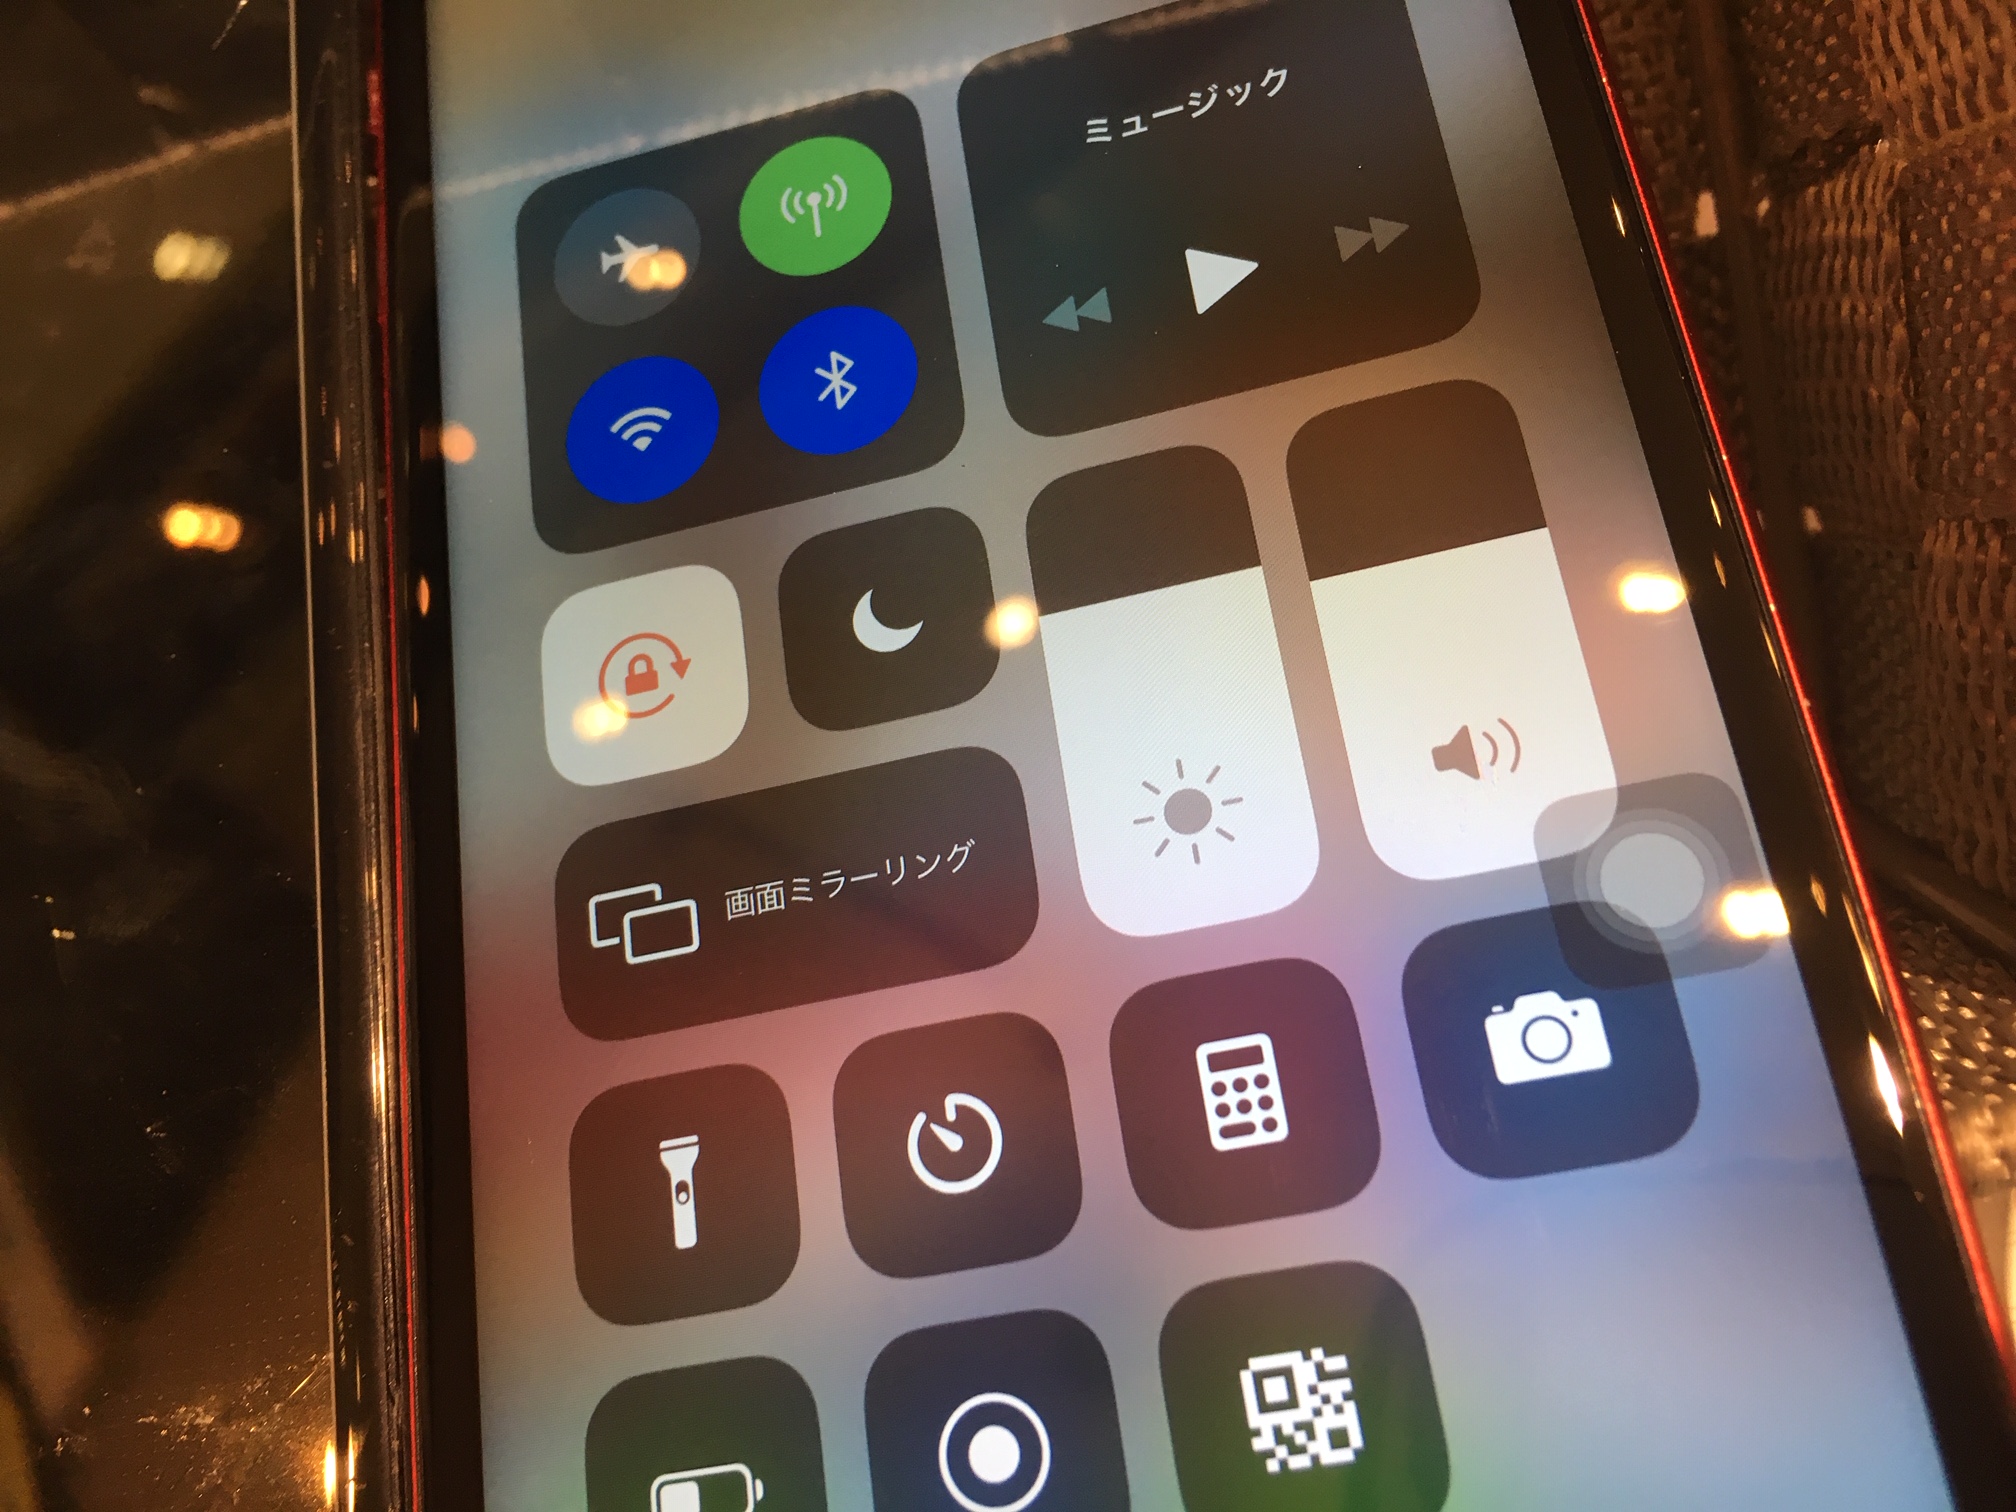 iPhone8、画面割れて操作できず((((；ﾟДﾟ))))ｶﾞｸｶﾞｸﾌﾞﾙﾌﾞﾙ　液晶交換でしっかり復活しました★　尼崎・伊丹・川西のiPhone修理専門店スマートクールです。